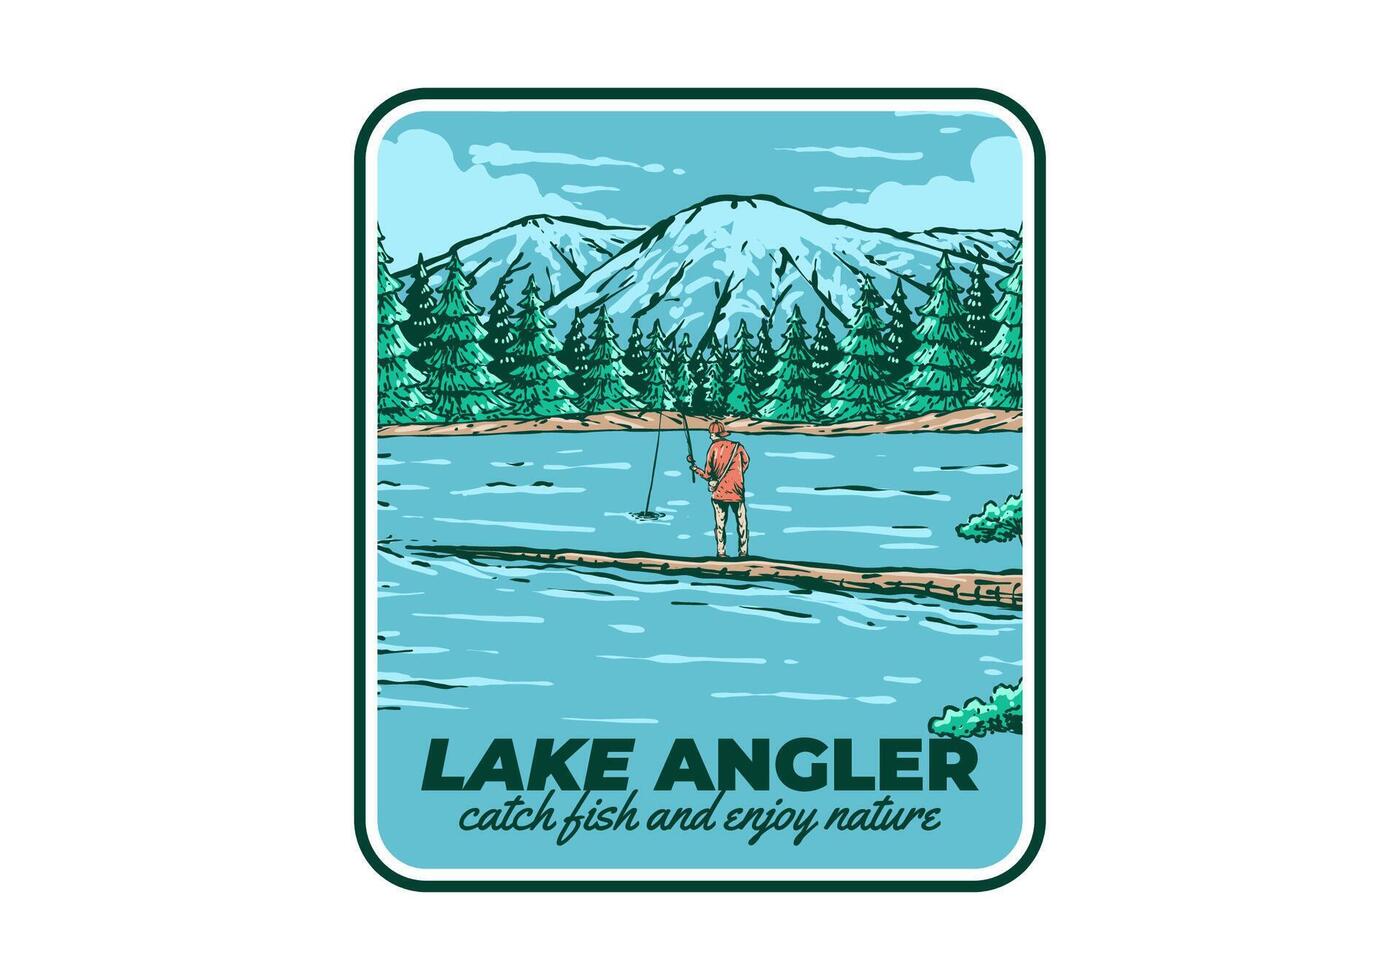 ancien illustration de une homme pêche sur le Lac avec forêt et Montagne vue vecteur